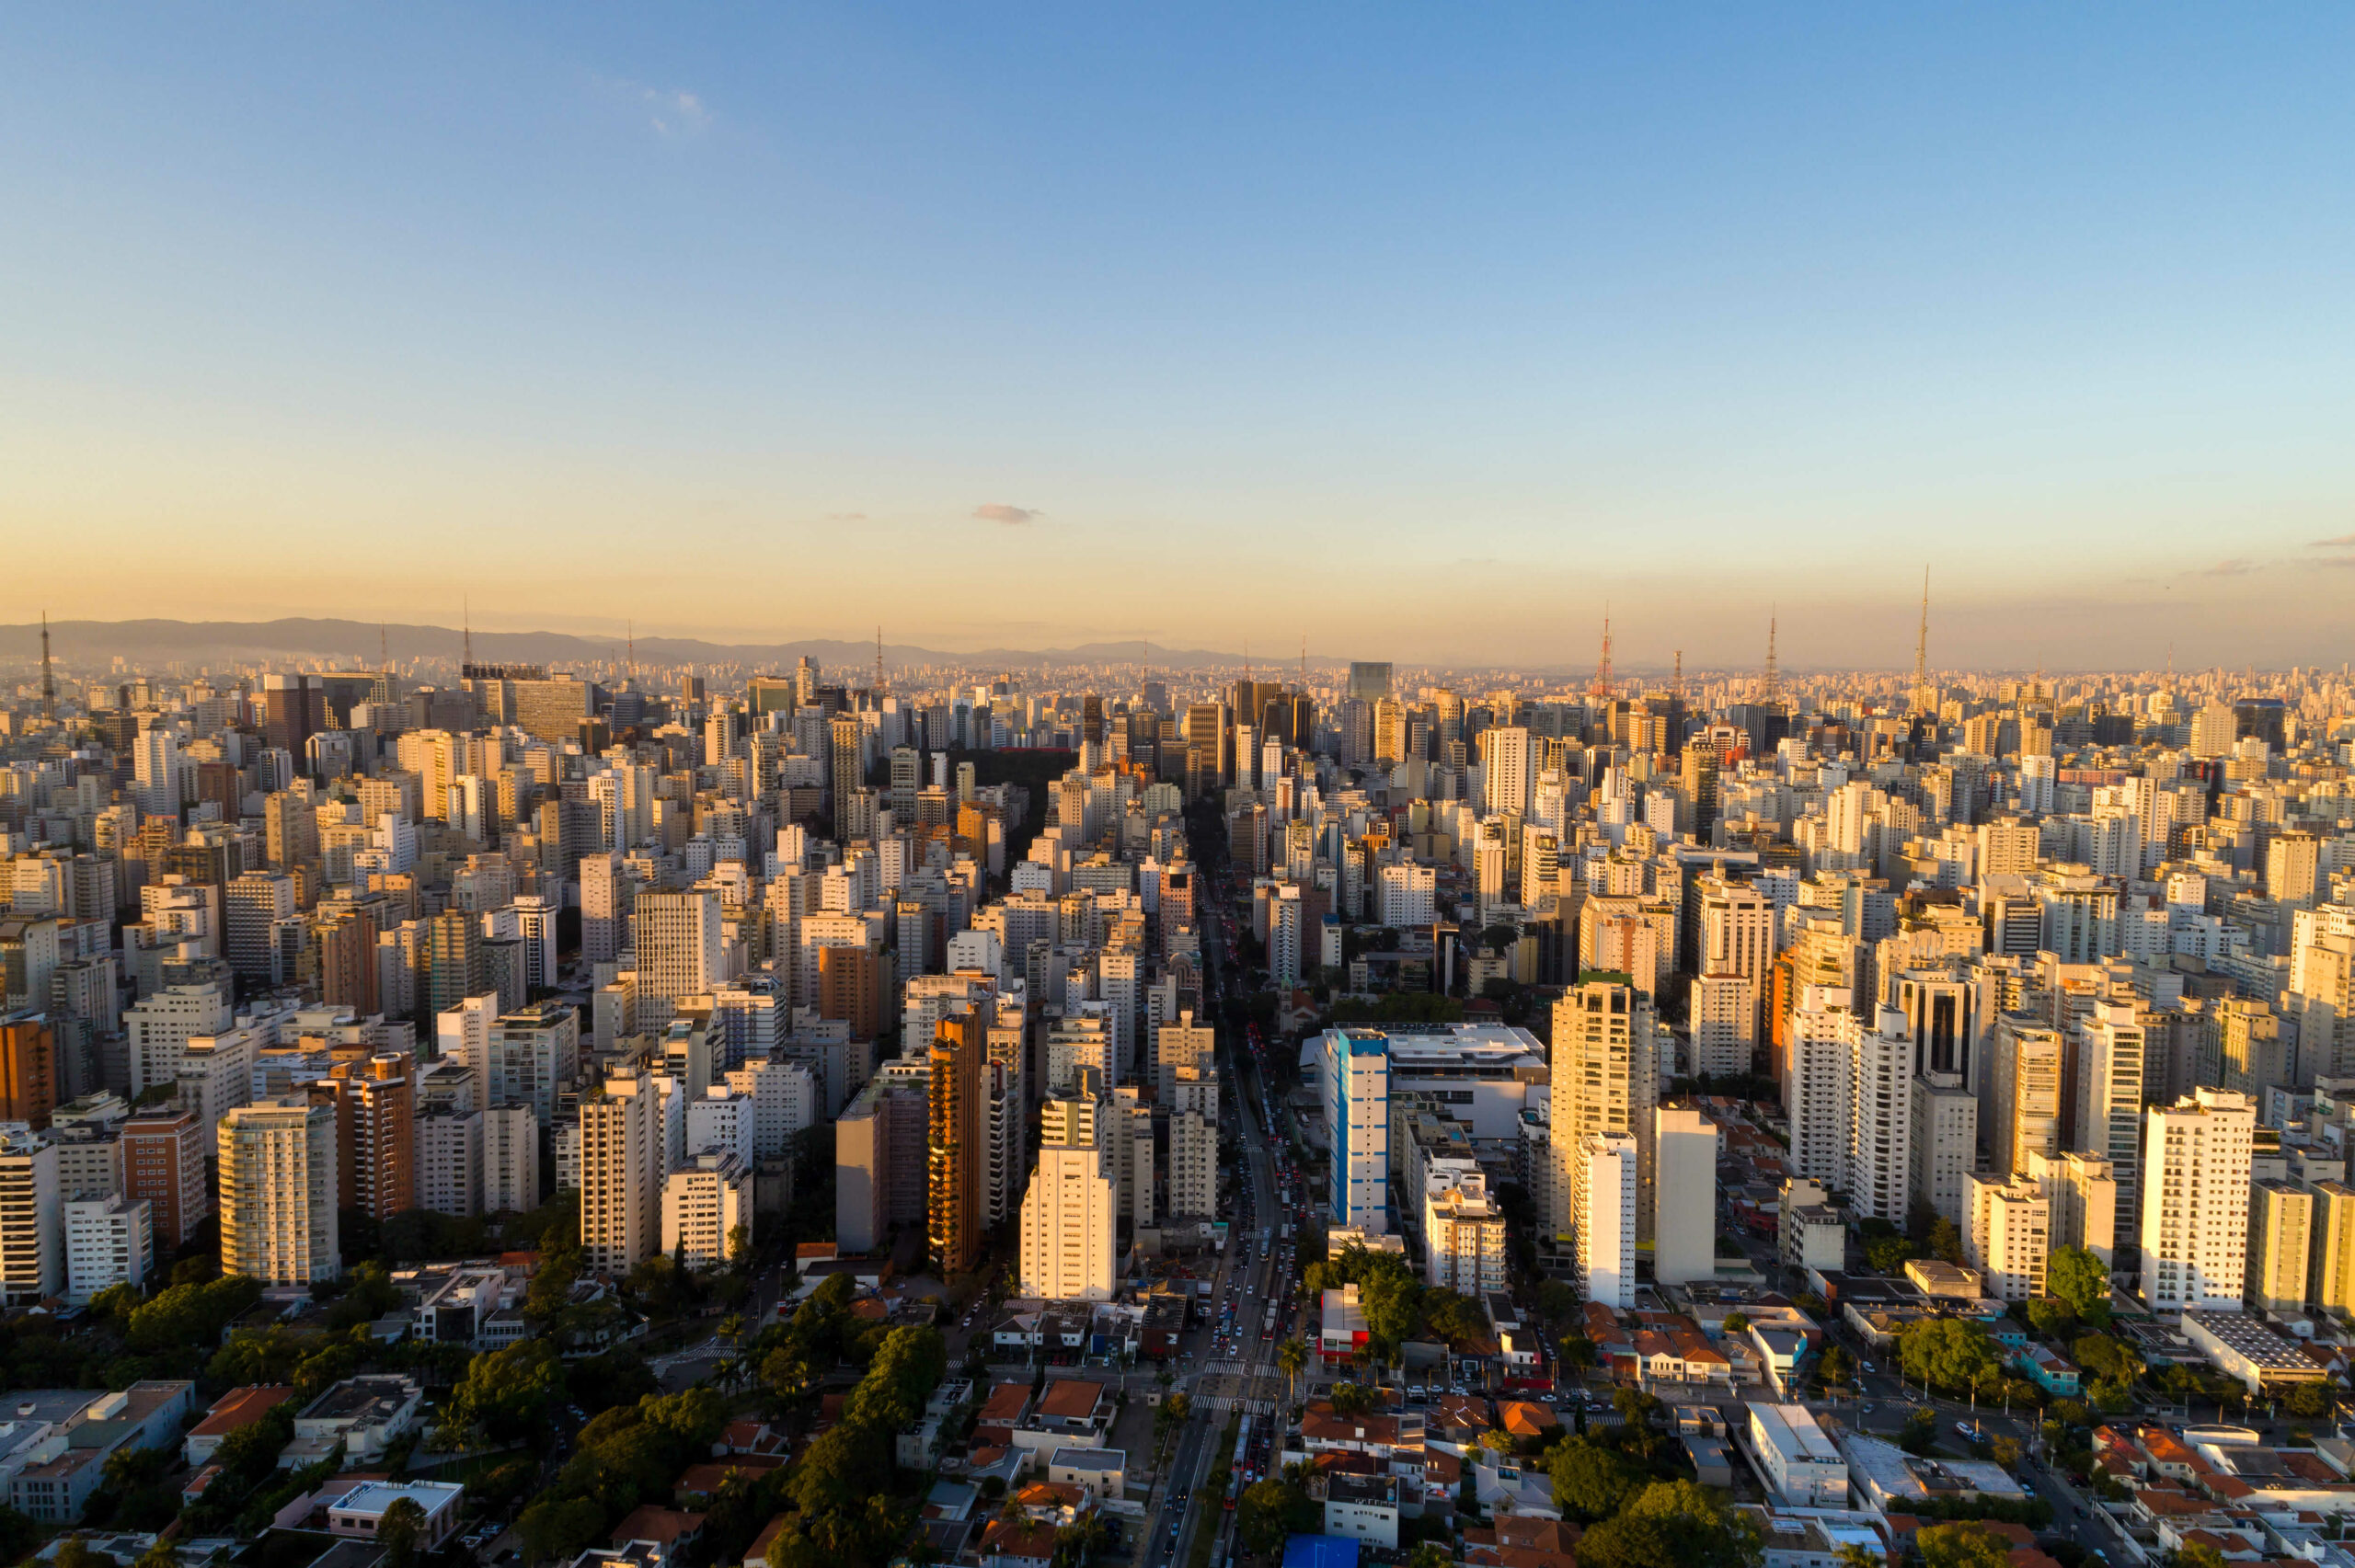 Imagem aérea da cidade de São Paulo. foto: Shutterstock